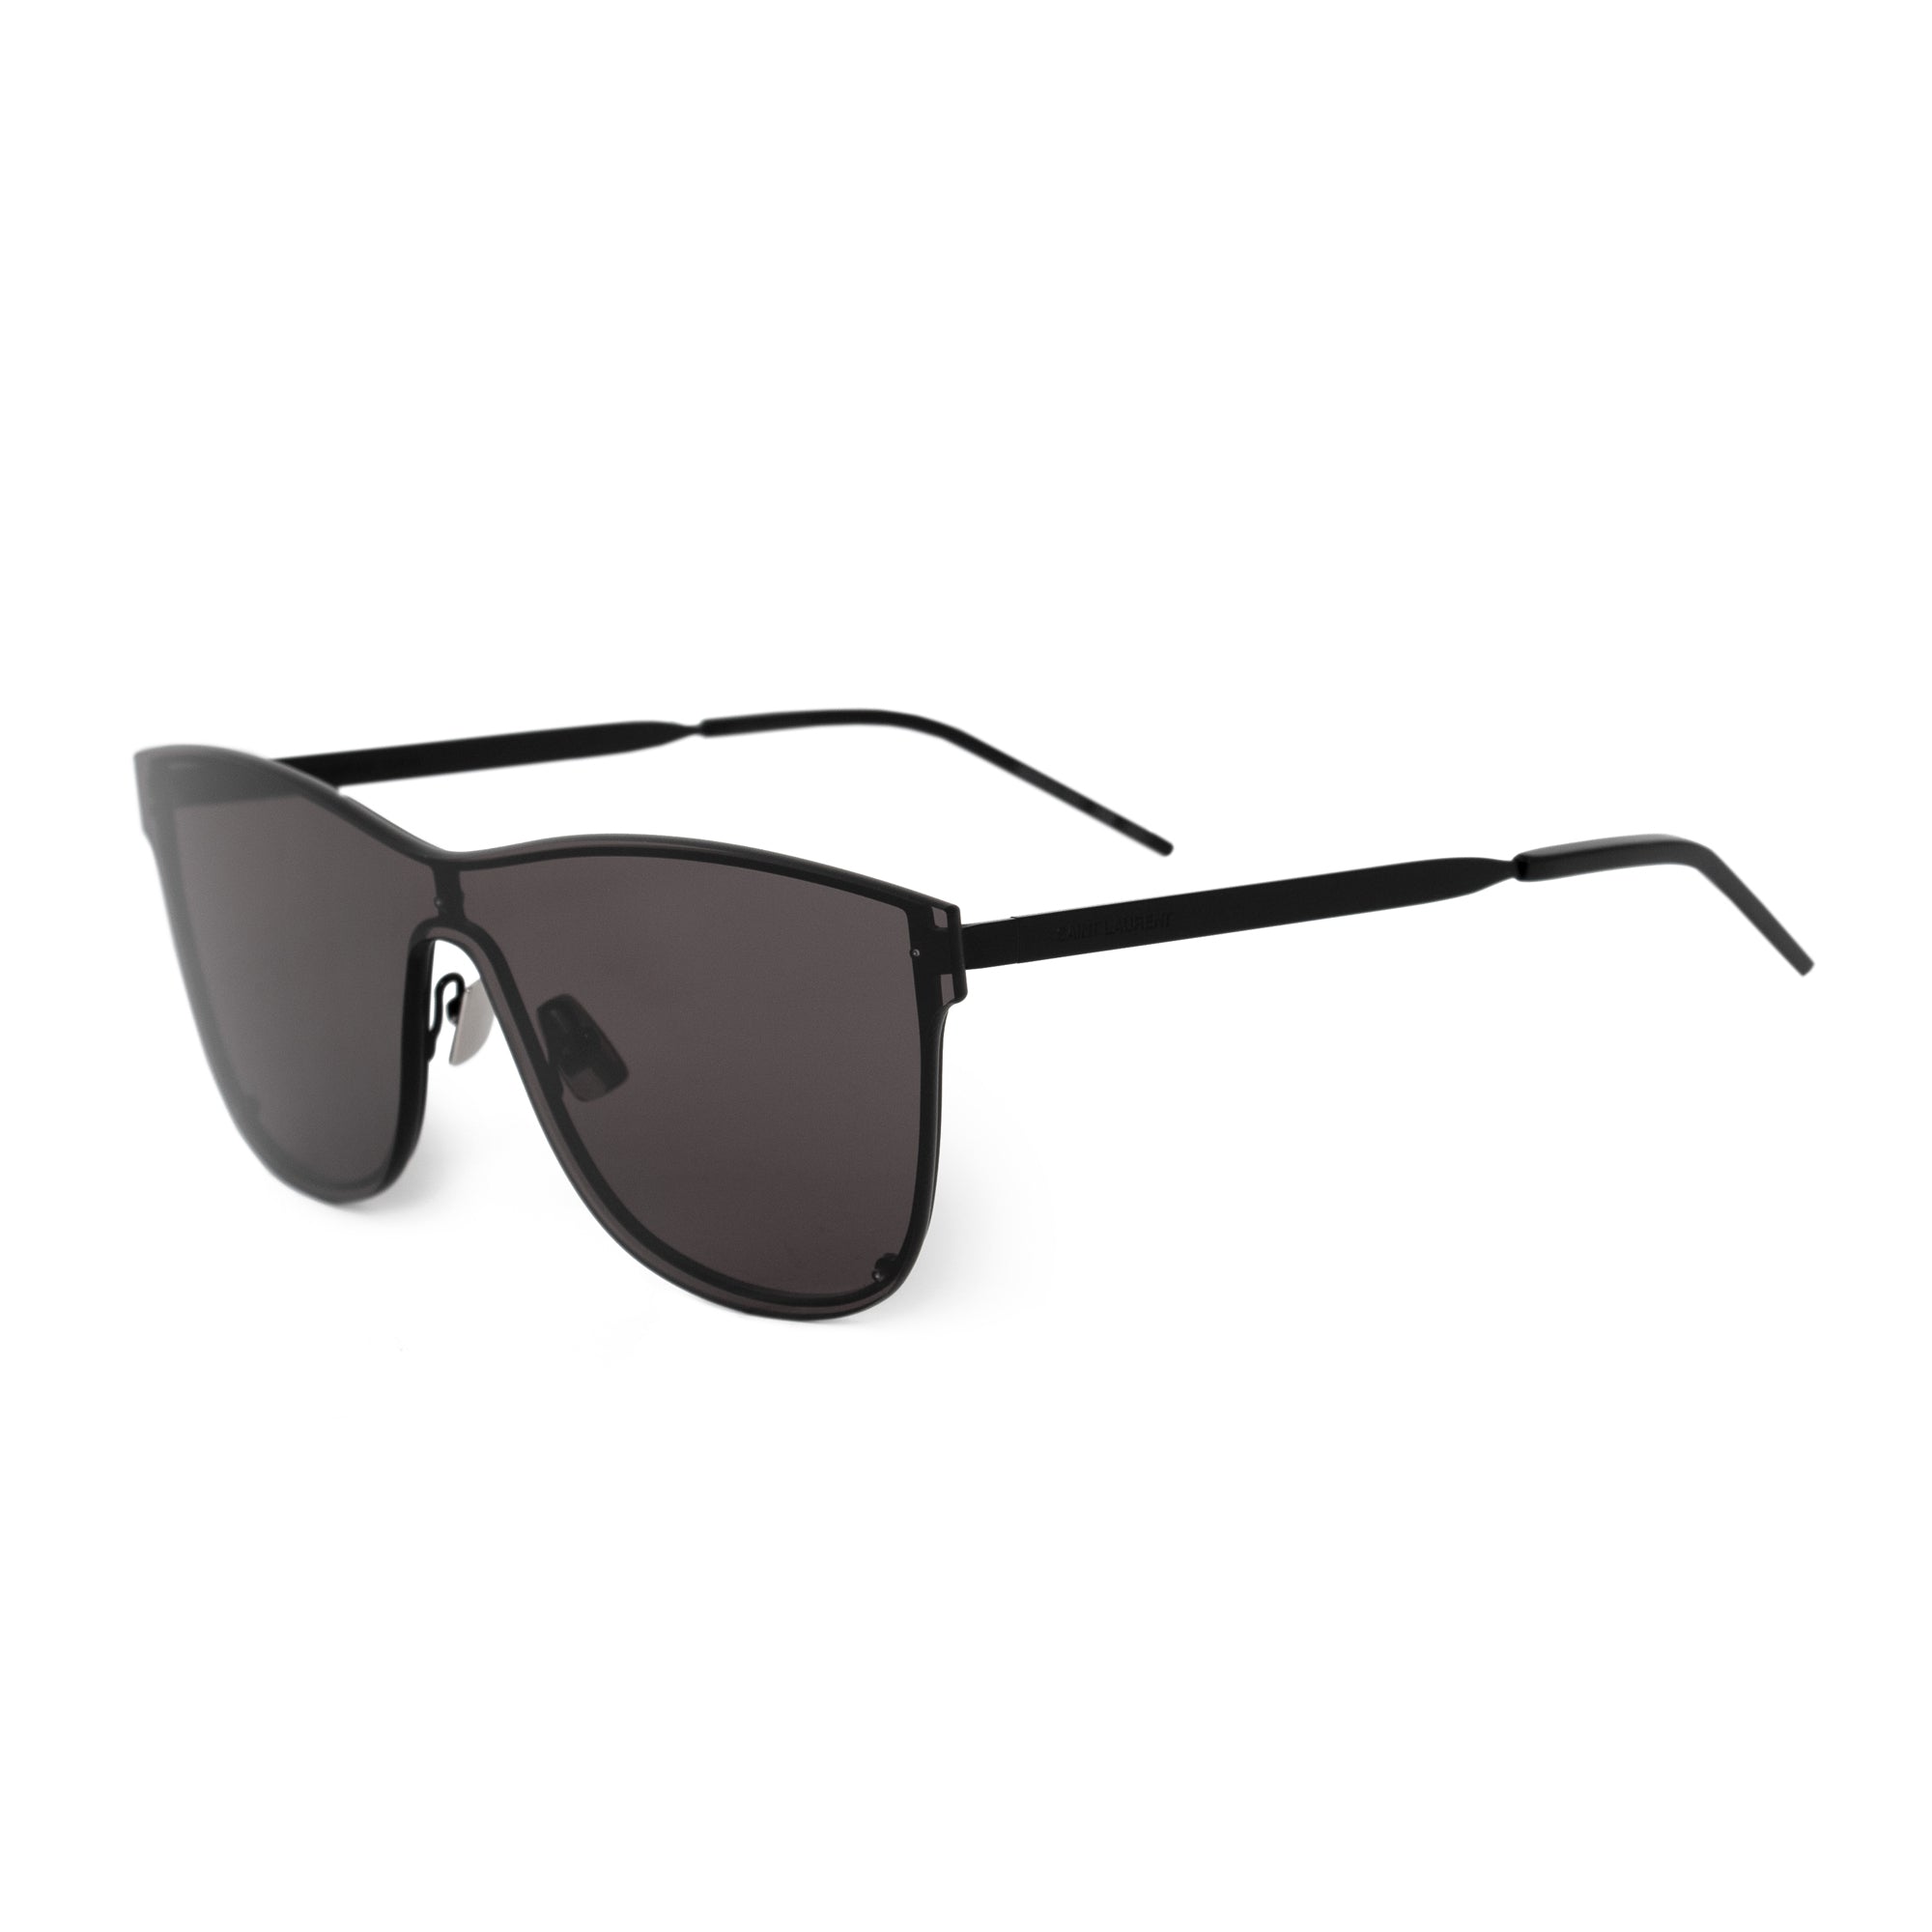 Saint Laurent Rectangular Sunglasses SL51 001 99